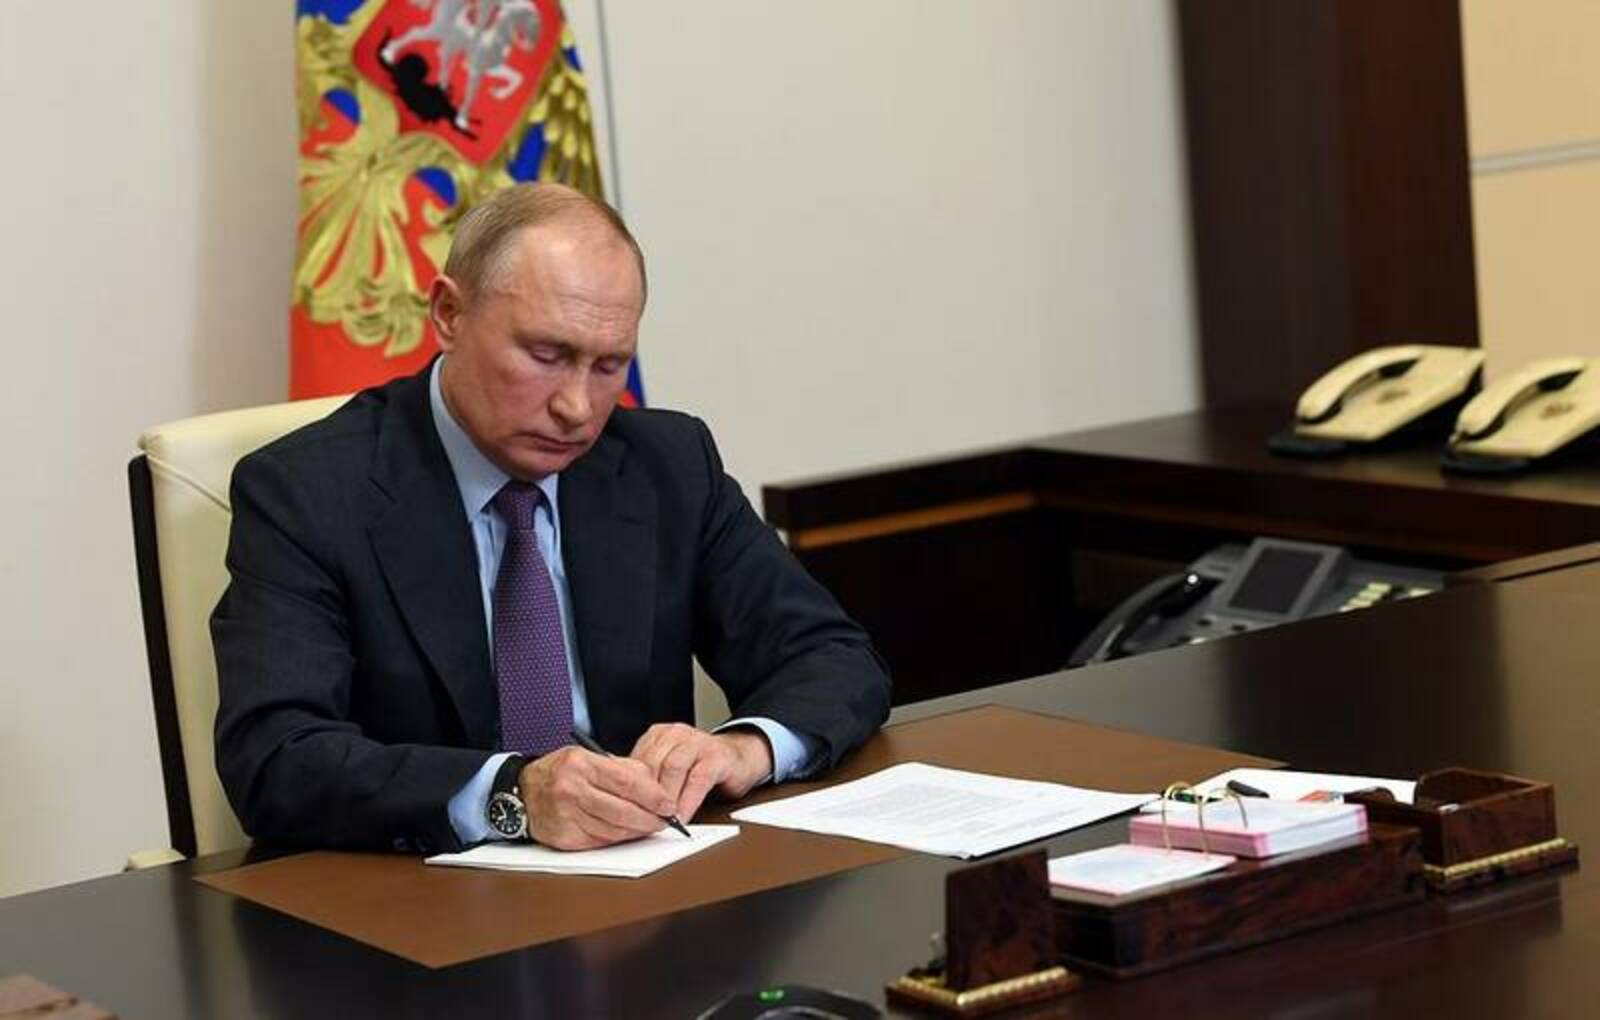 Путин Еңеүҙең 80 йыллығын билдәләүгә әҙерлек тураһында указға ҡул ҡуйҙы